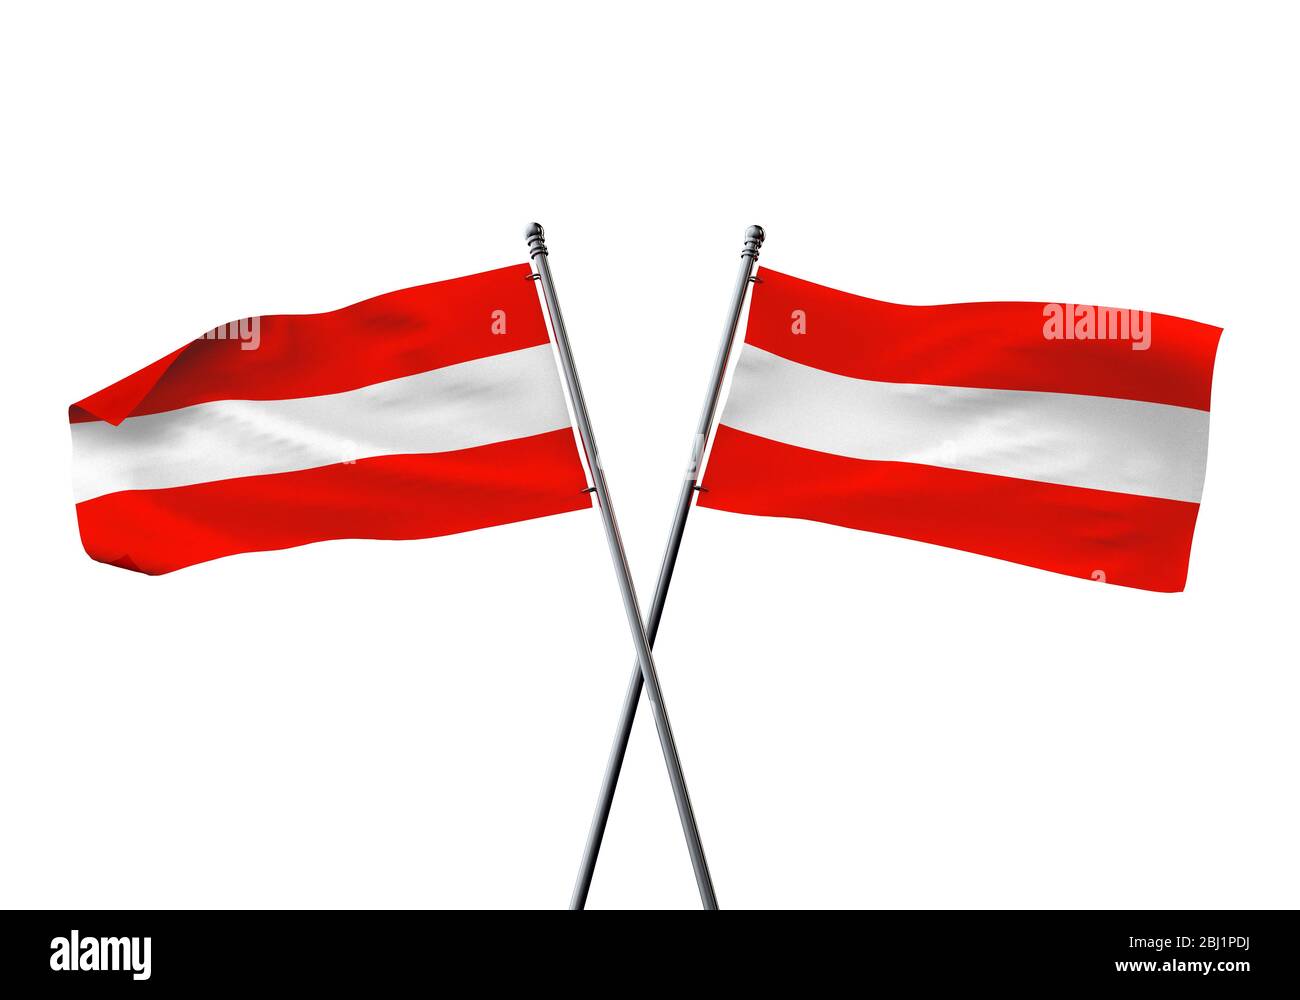 66,647 Austria Flag Images, Stock Photos, 3D objects, & Vectors